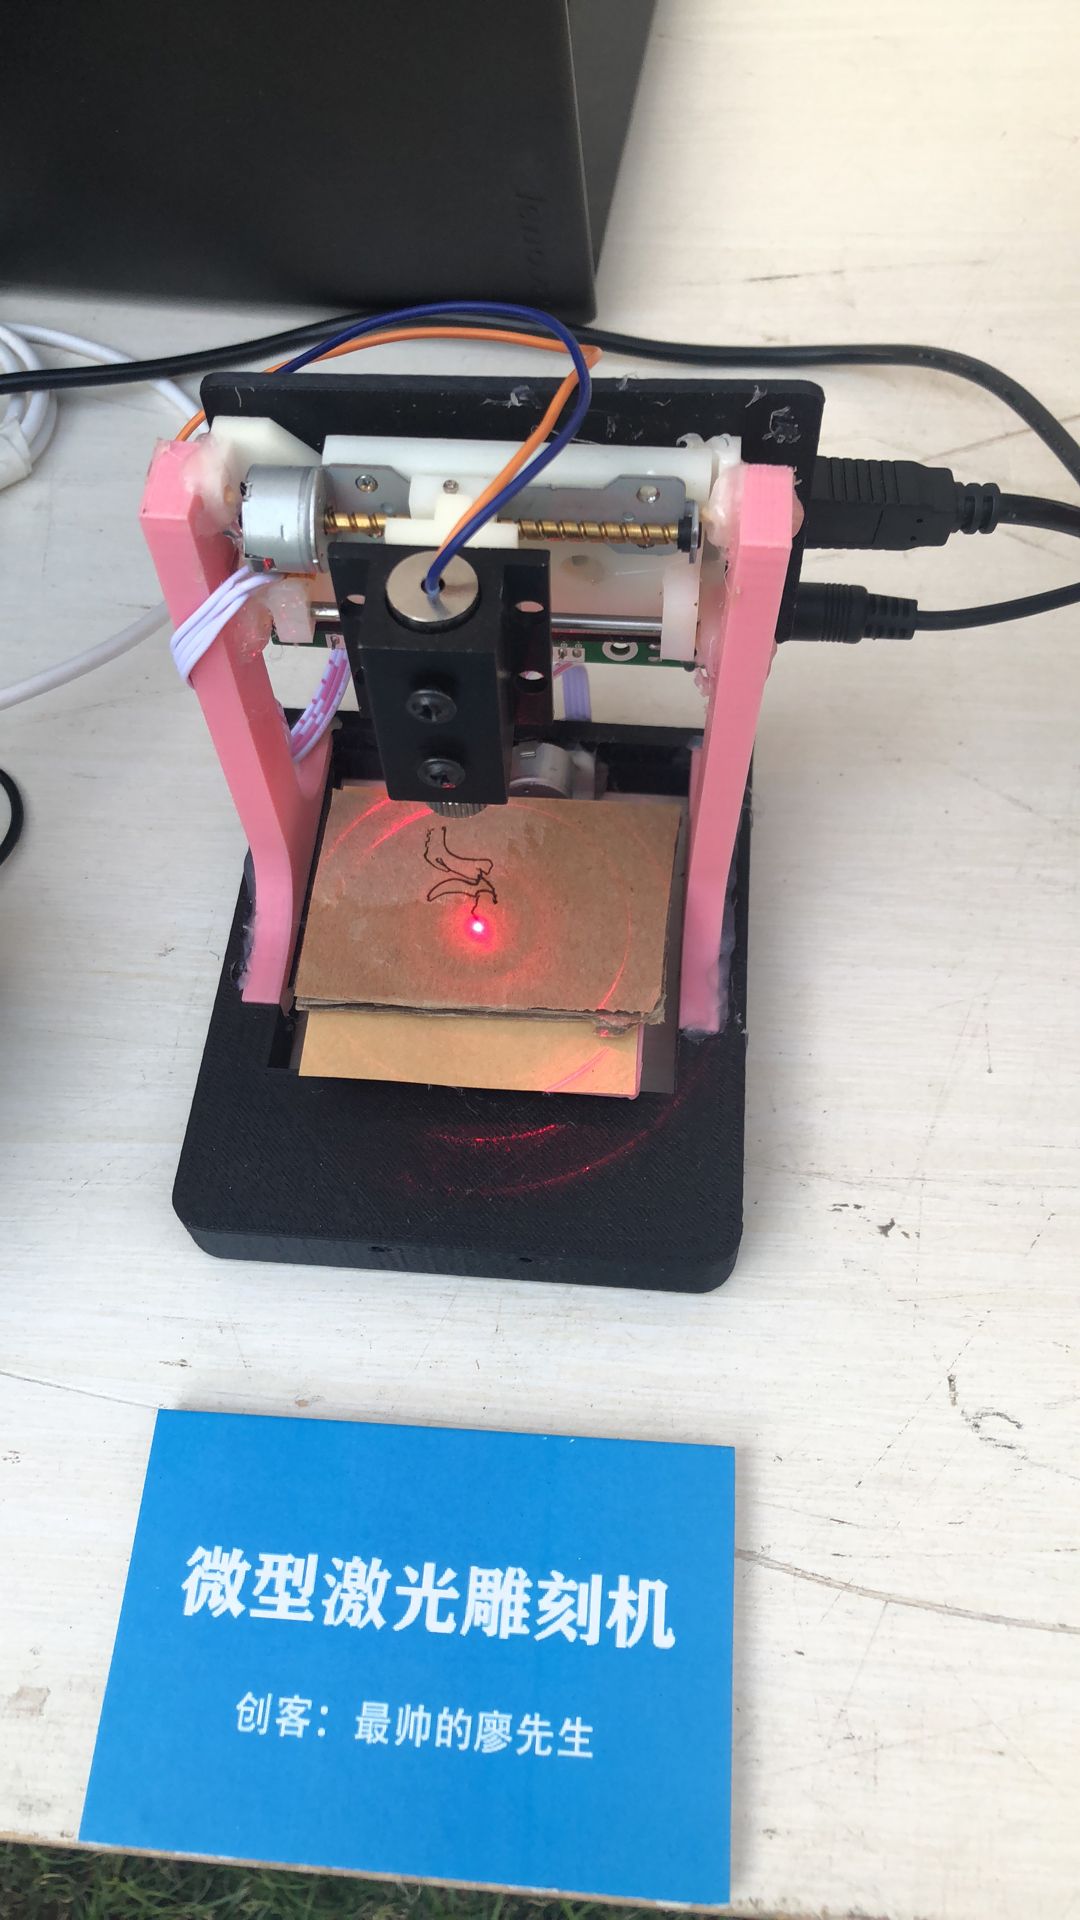  DIY一个微型激光雕刻机